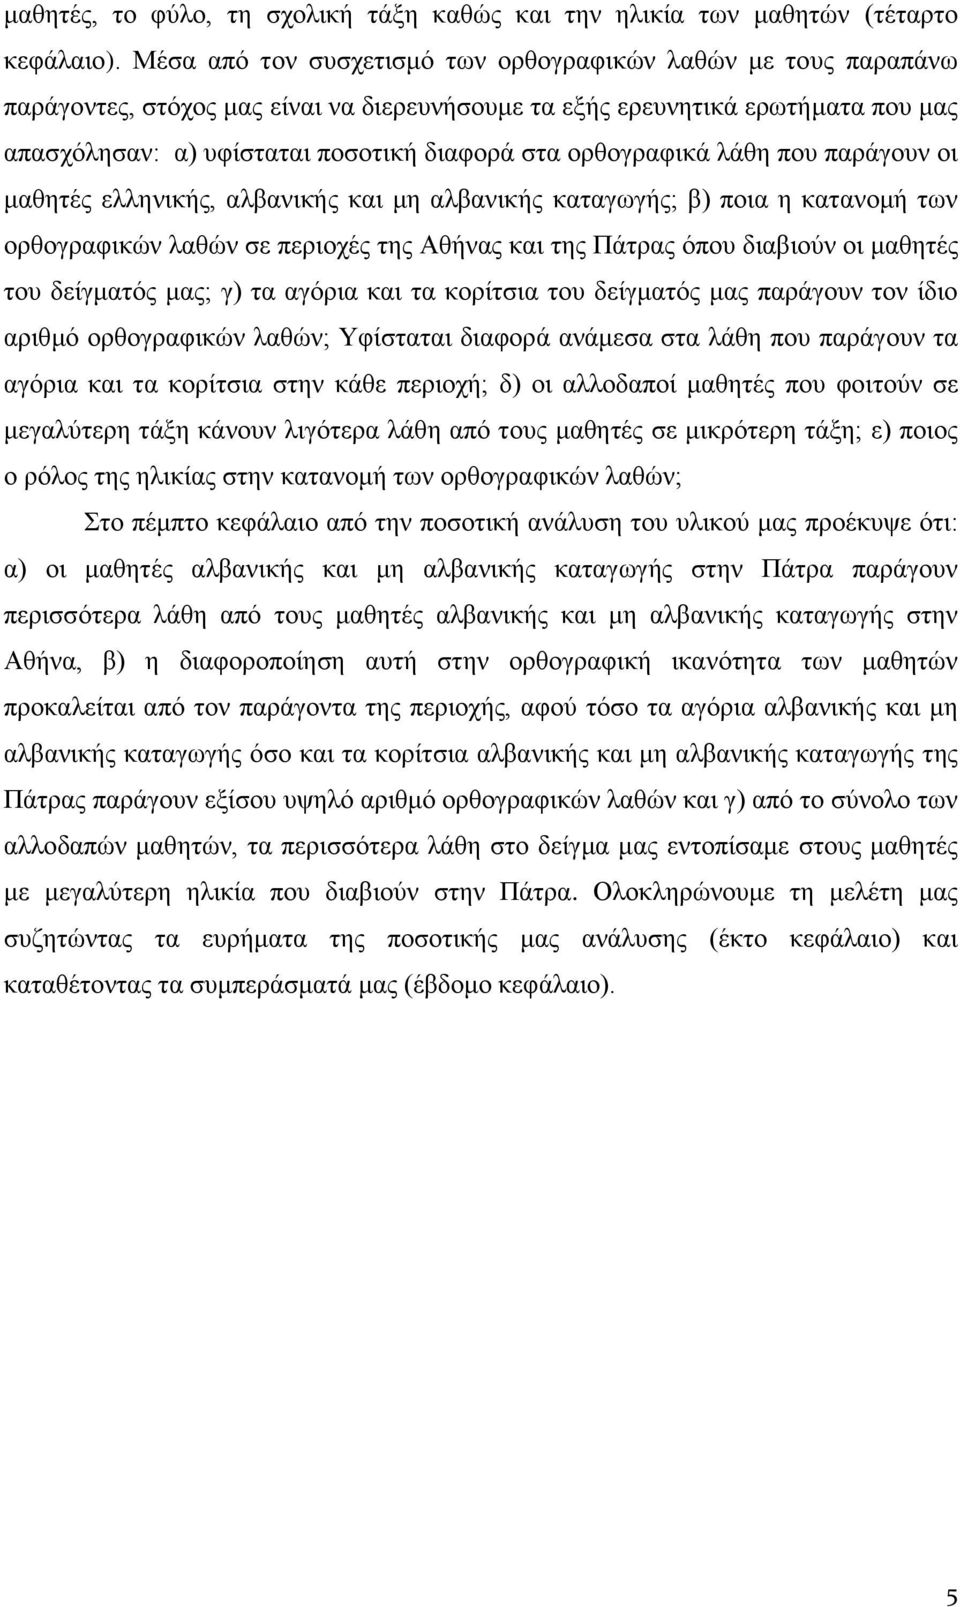 ορθογραφικά λάθη που παράγουν οι μαθητές ελληνικής, αλβανικής και μη αλβανικής καταγωγής; β) ποια η κατανομή των ορθογραφικών λαθών σε περιοχές της Αθήνας και της Πάτρας όπου διαβιούν οι μαθητές του